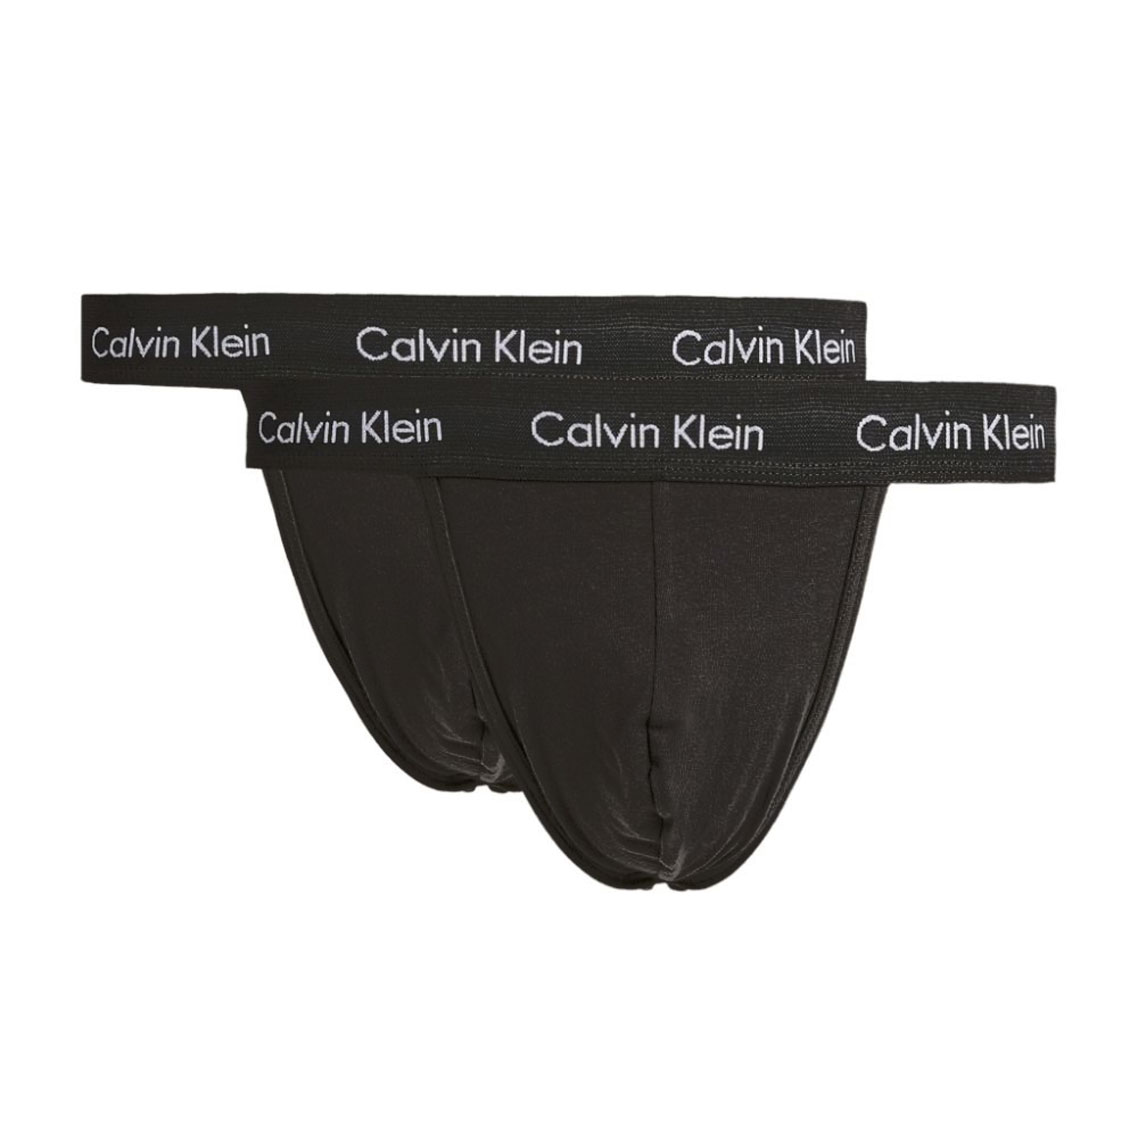 Calvin Klein herenstring cotton stretch 2-pack